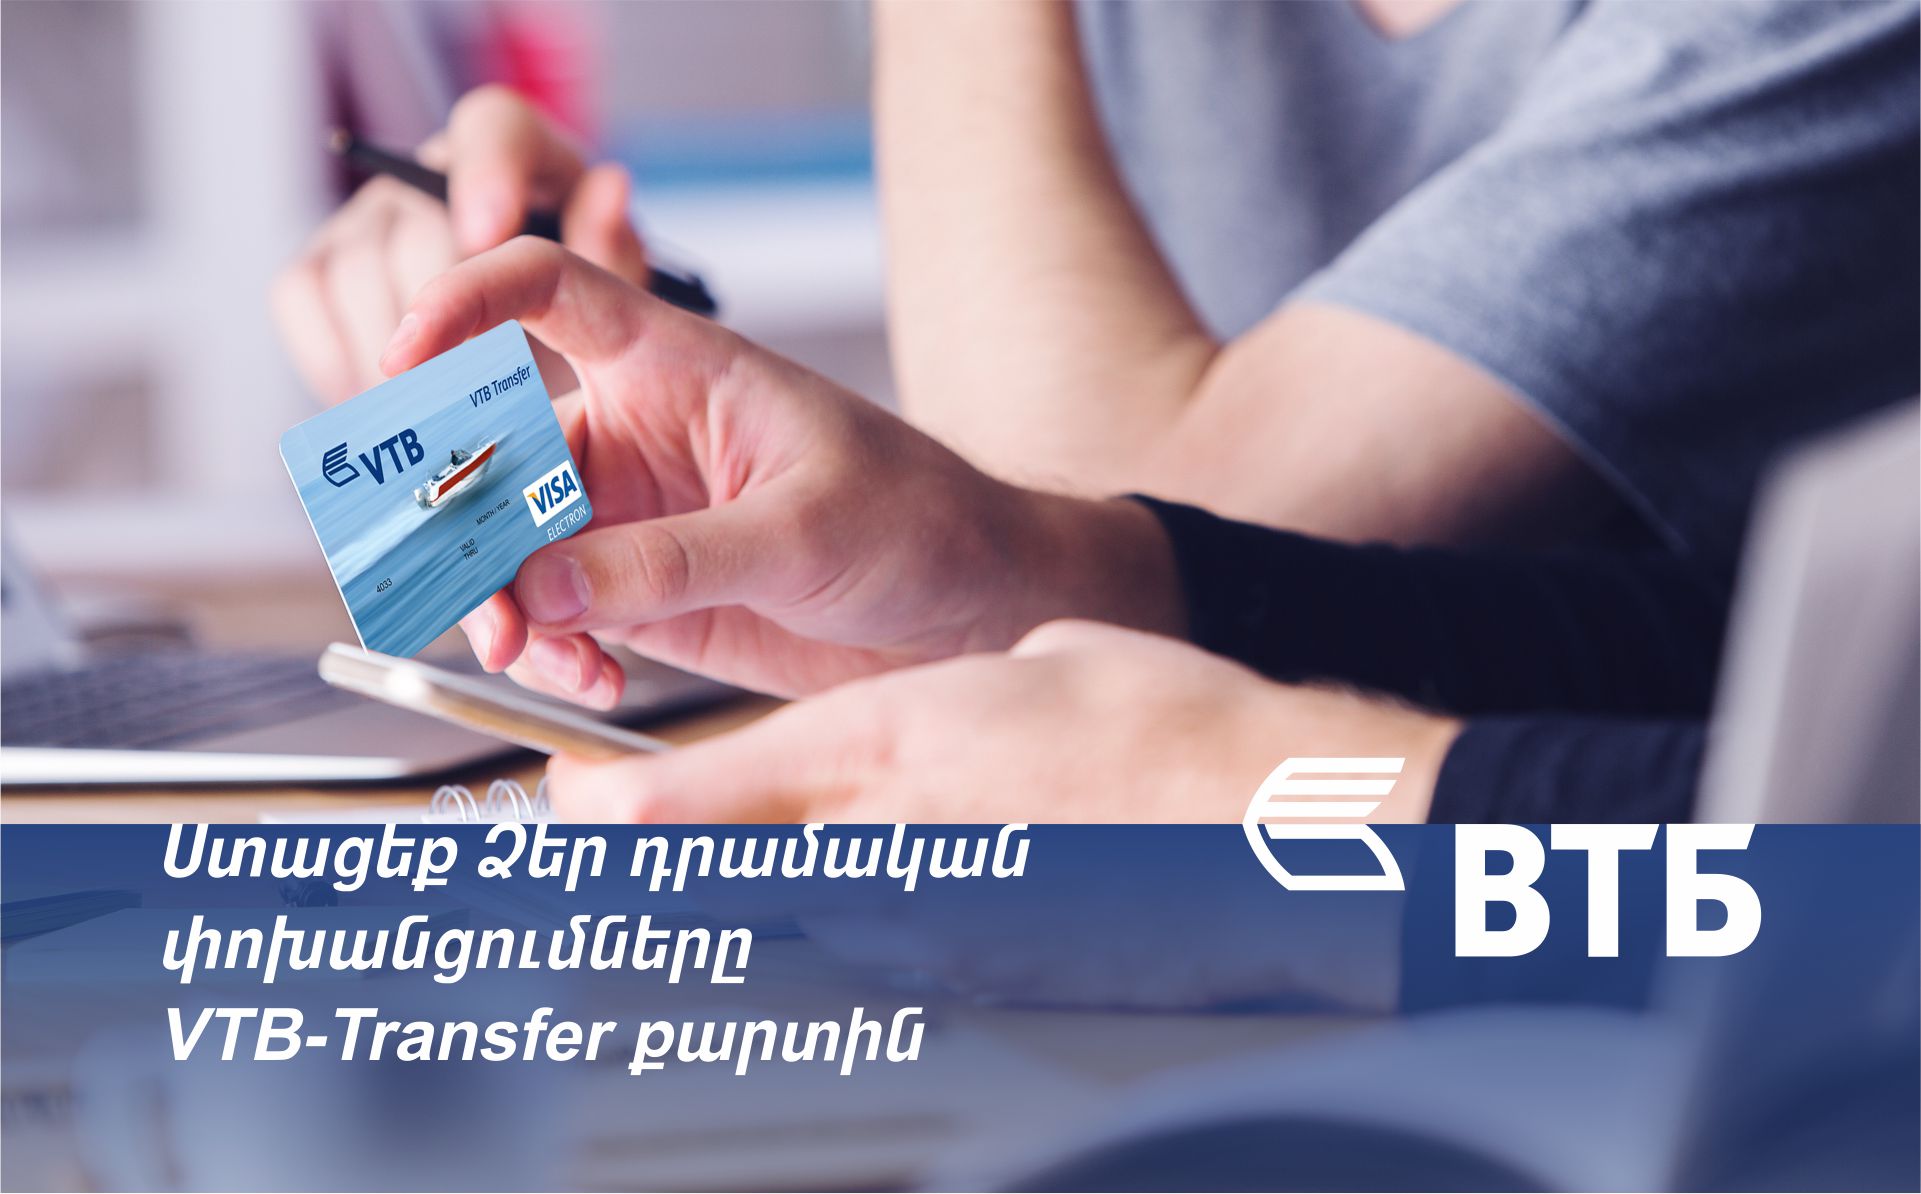 Банк ВТБ (Армения) предлагает специальную карту VTB-Transfer для получения денежных переводов из-за рубежа без необходимости посещения филиала